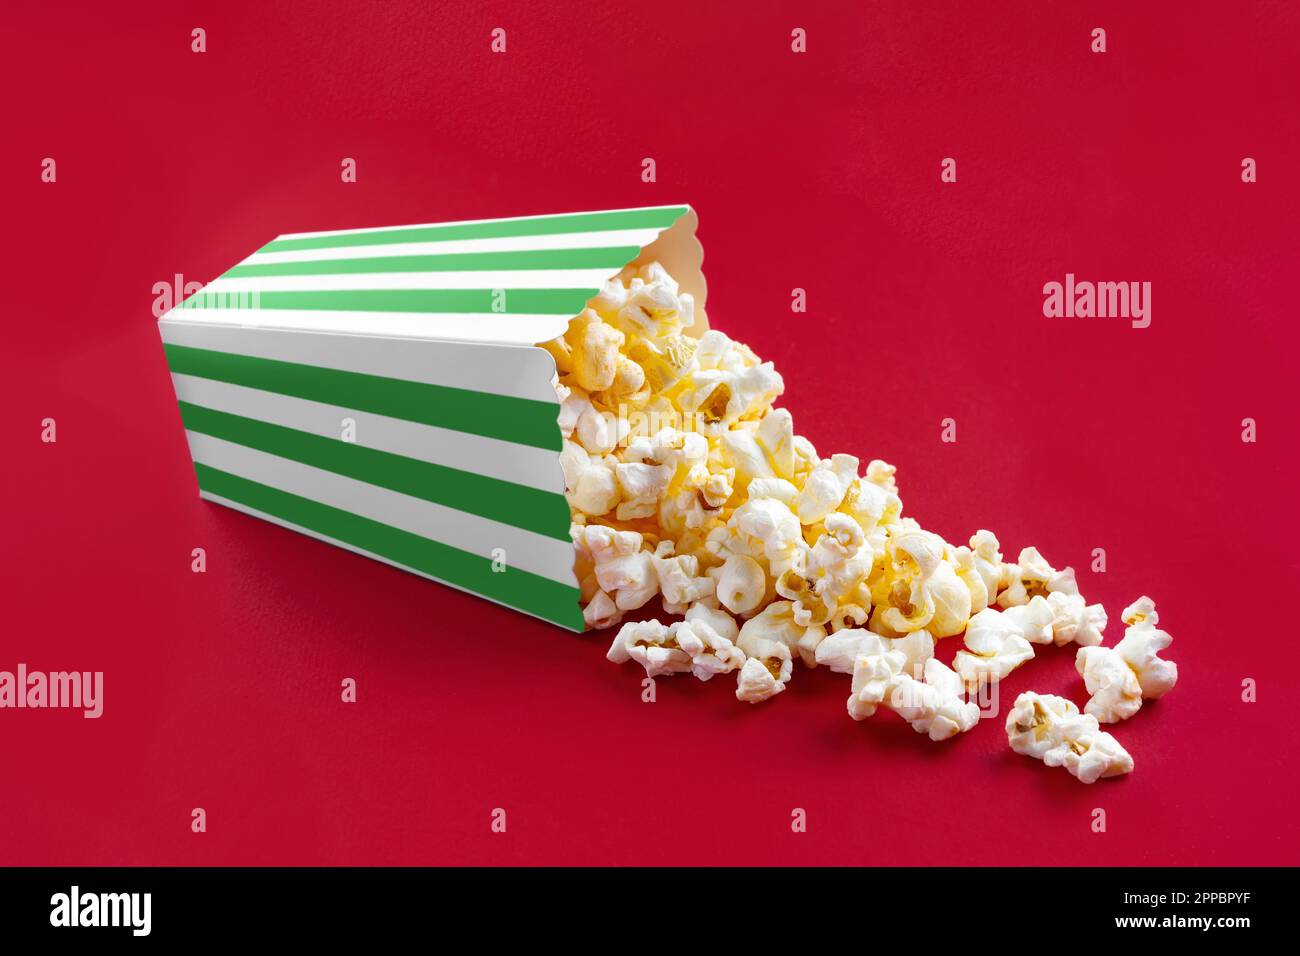 Gustoso popcorn al formaggio che cade da un secchio di cartone a strisce verdi, isolato su sfondo rosso. Dispersione di grani di popcorn. Film, cinema e intrattenimento Foto Stock